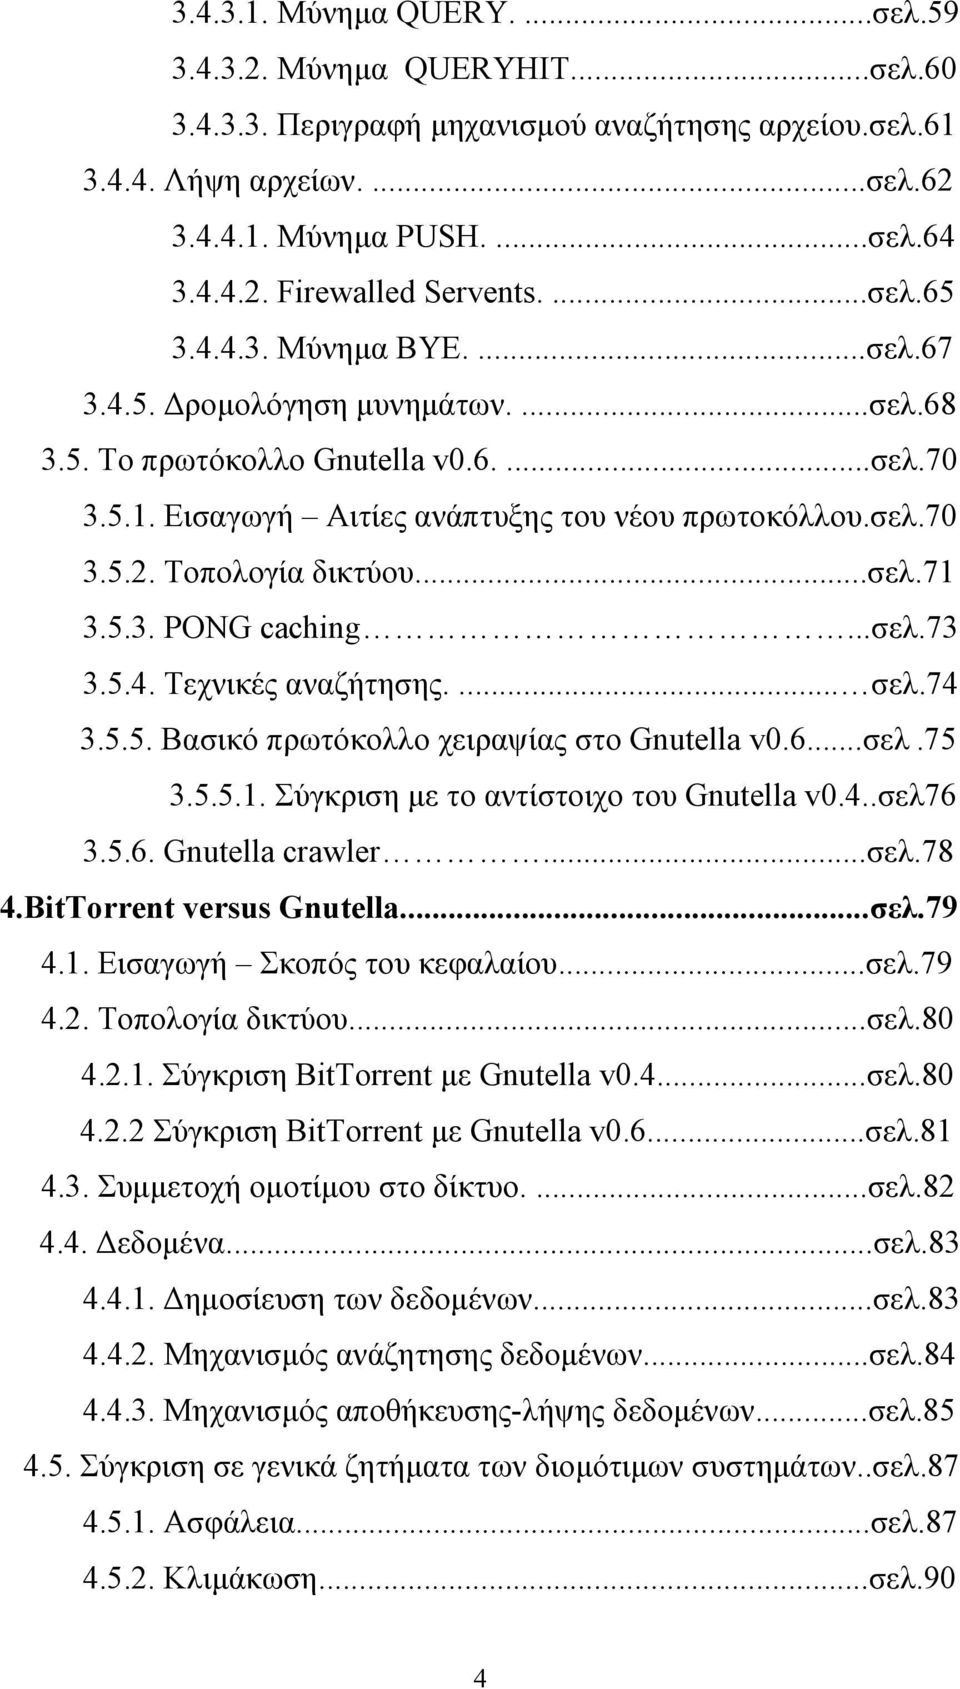 Τοπολογία δικτύου...σελ.71 3.5.3. PONG caching...σελ.73 3.5.4. Τεχνικές αναζήτησης.... σελ.74 3.5.5. Βασικό πρωτόκολλο χειραψίας στο Gnutella v0.6...σελ.75 3.5.5.1. Σύγκριση με το αντίστοιχο του Gnutella v0.